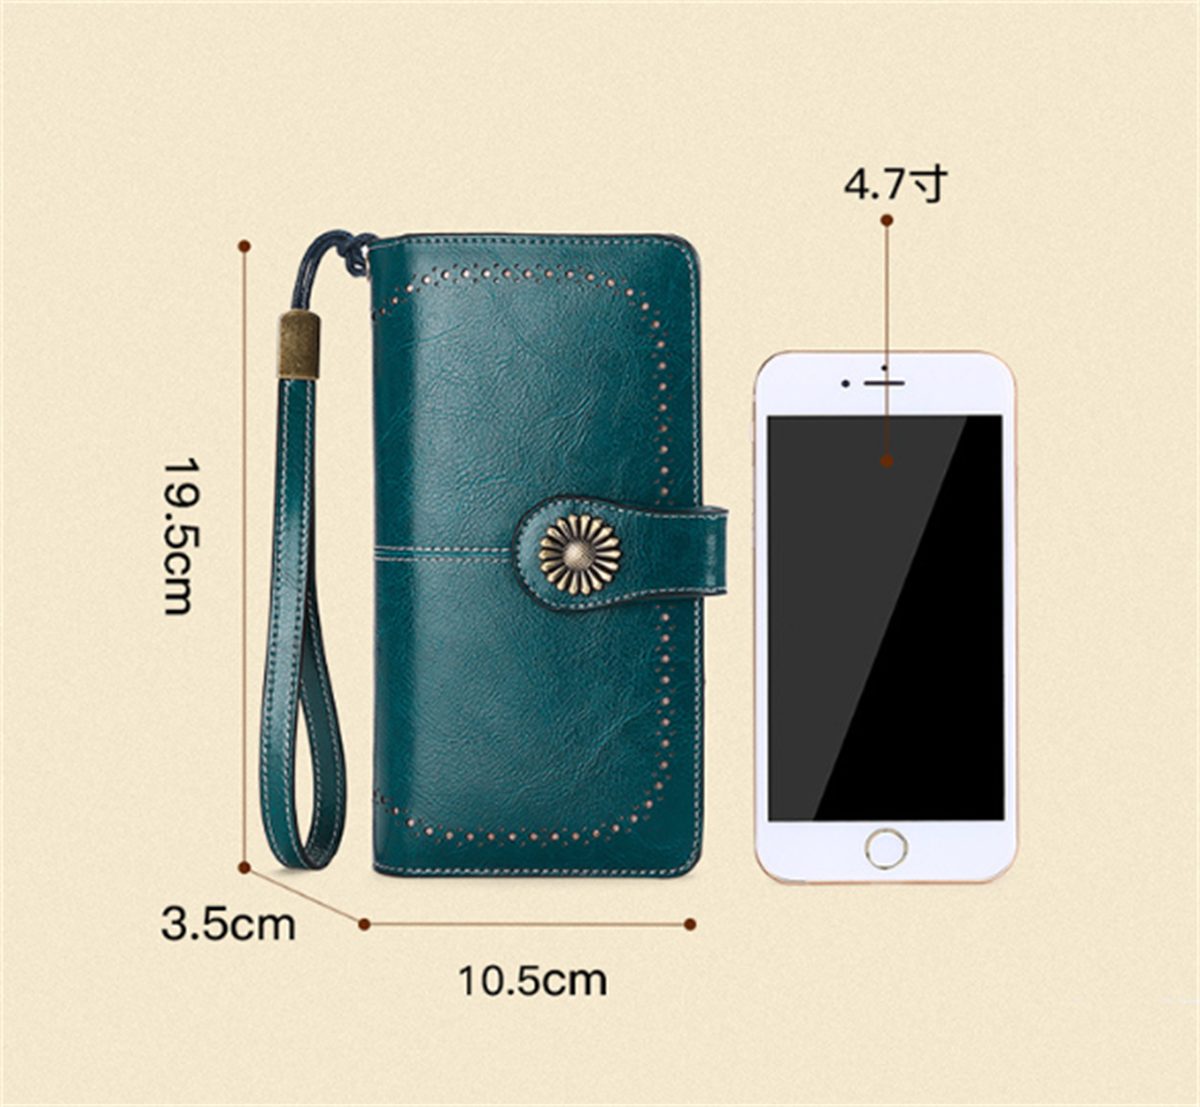 RFID-Schutz Brieftasche Echtleder-Geldbörse und mehreren selected mit Kartenfächern carefully Blau